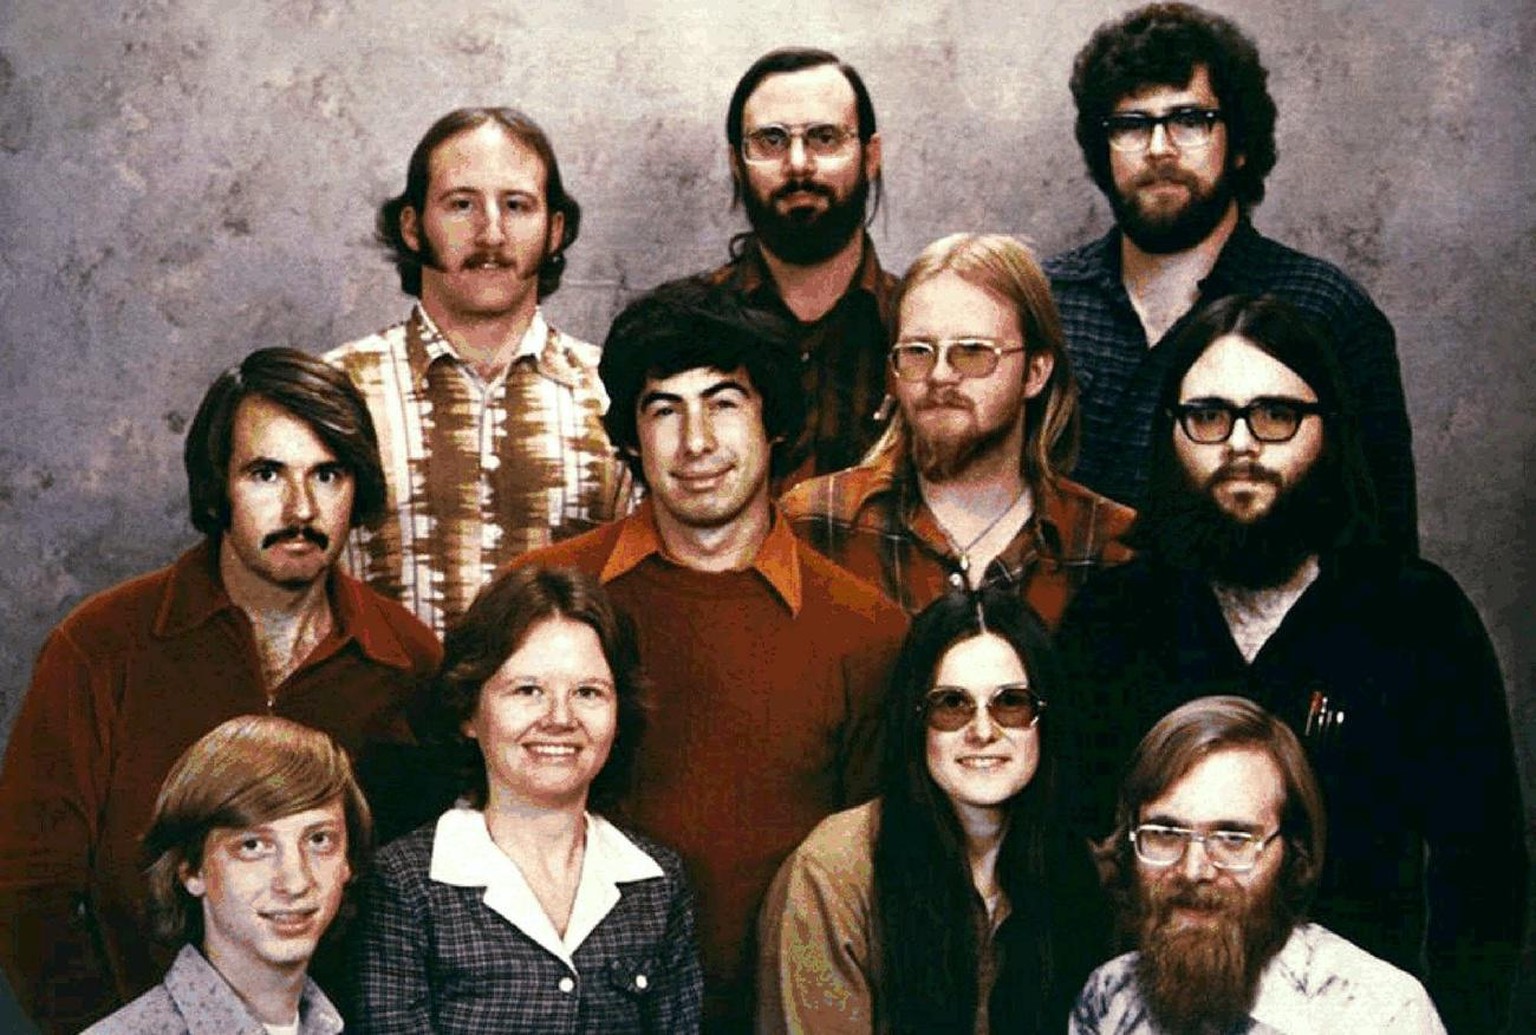 So geht Gruppenfoto. Die Microsoft-Gründer und ihre ersten Mitarbeiter. Unten links <strike>Tony Hawk</strike>, <strike>Wayne Gretzky</strike>, Bill Gates, unten rechts Paul Allen. 